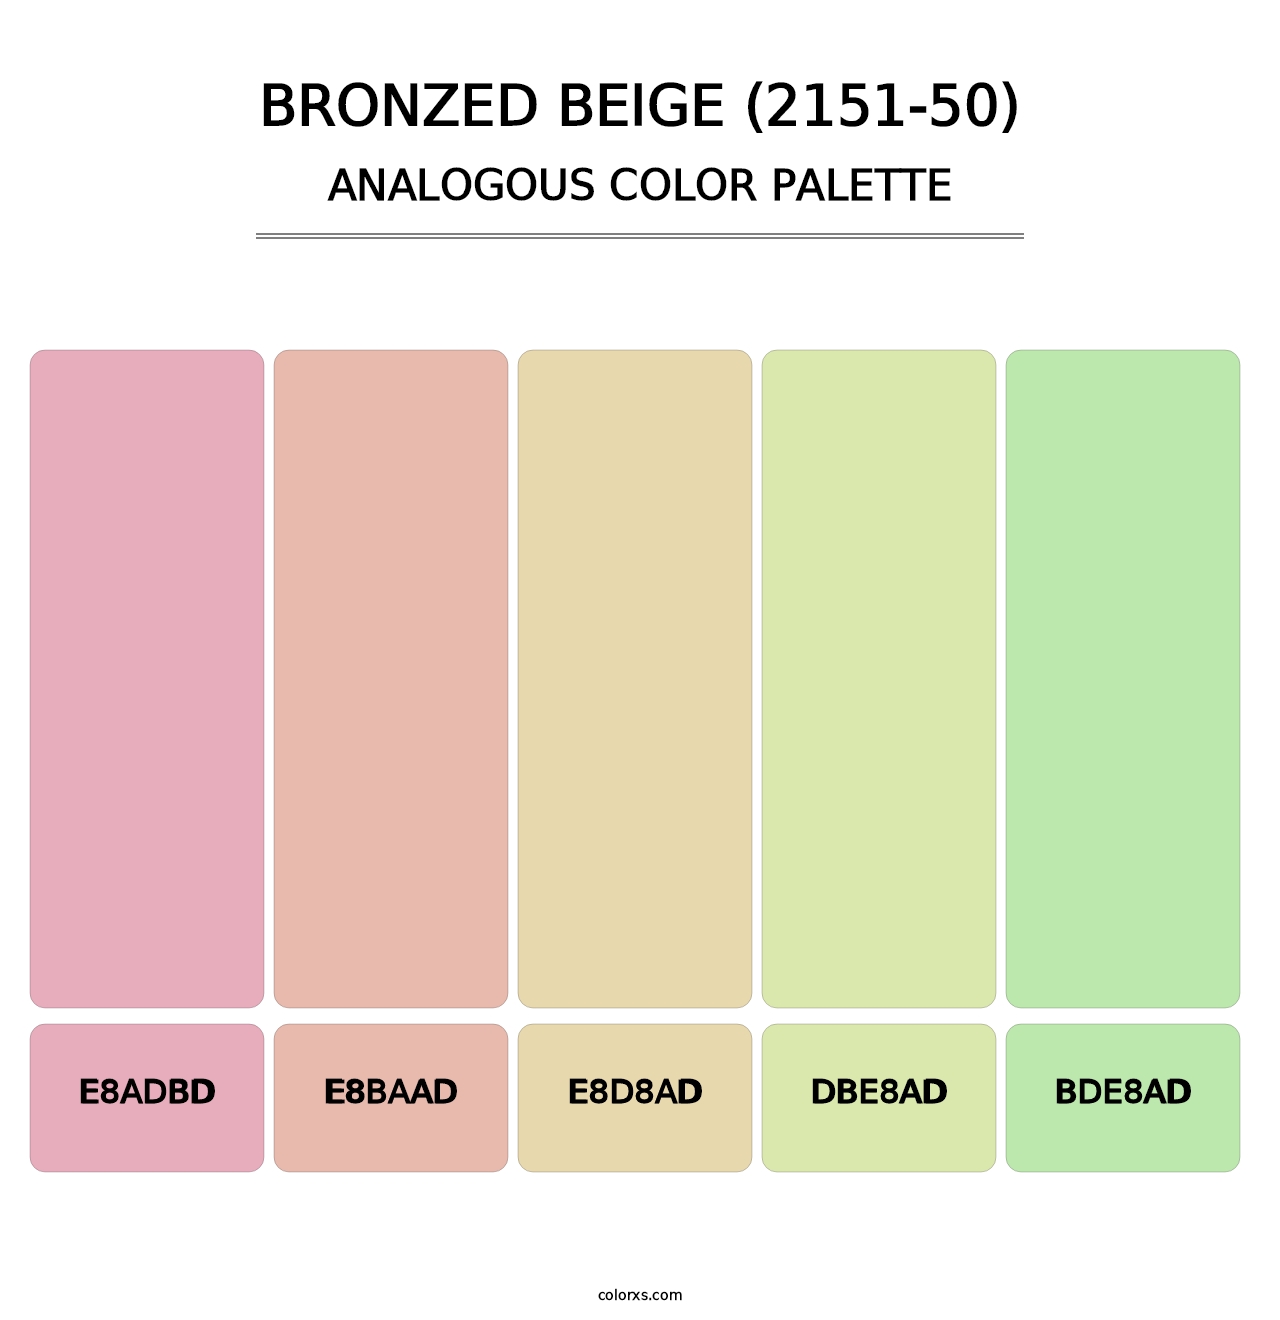 Bronzed Beige (2151-50) - Analogous Color Palette